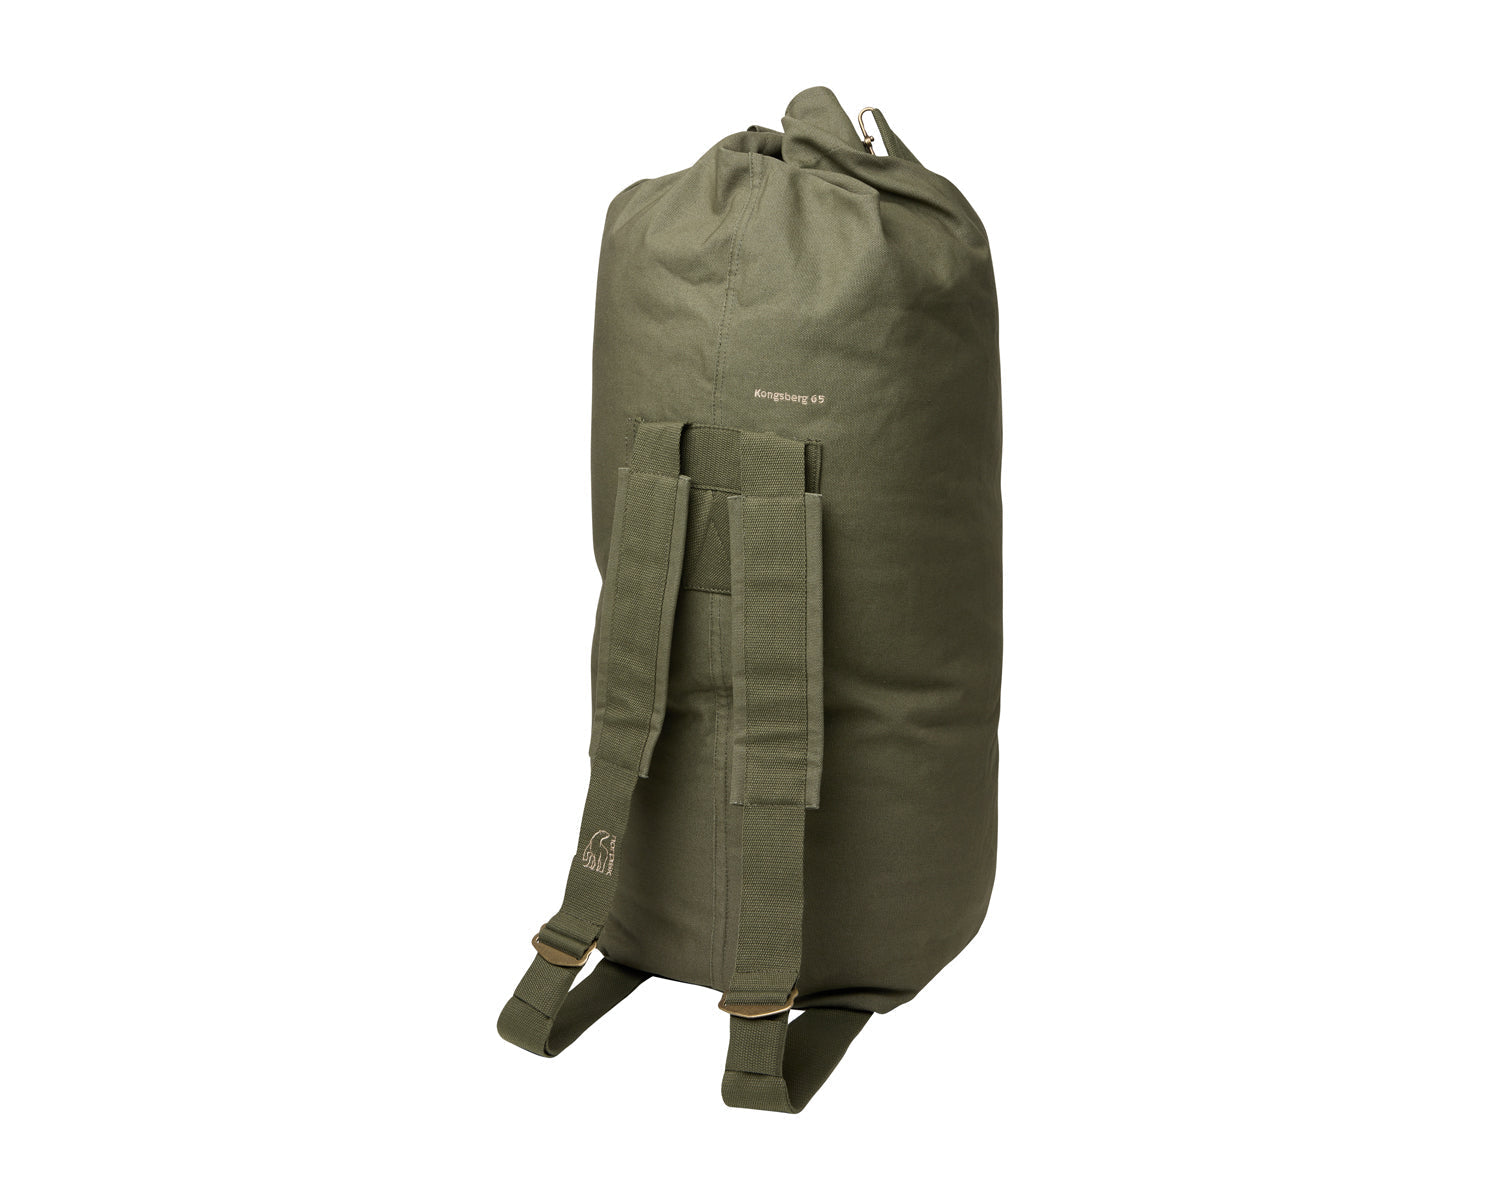 Kongsberg 65 duffel bag - 65 L - Four Leaf Clover